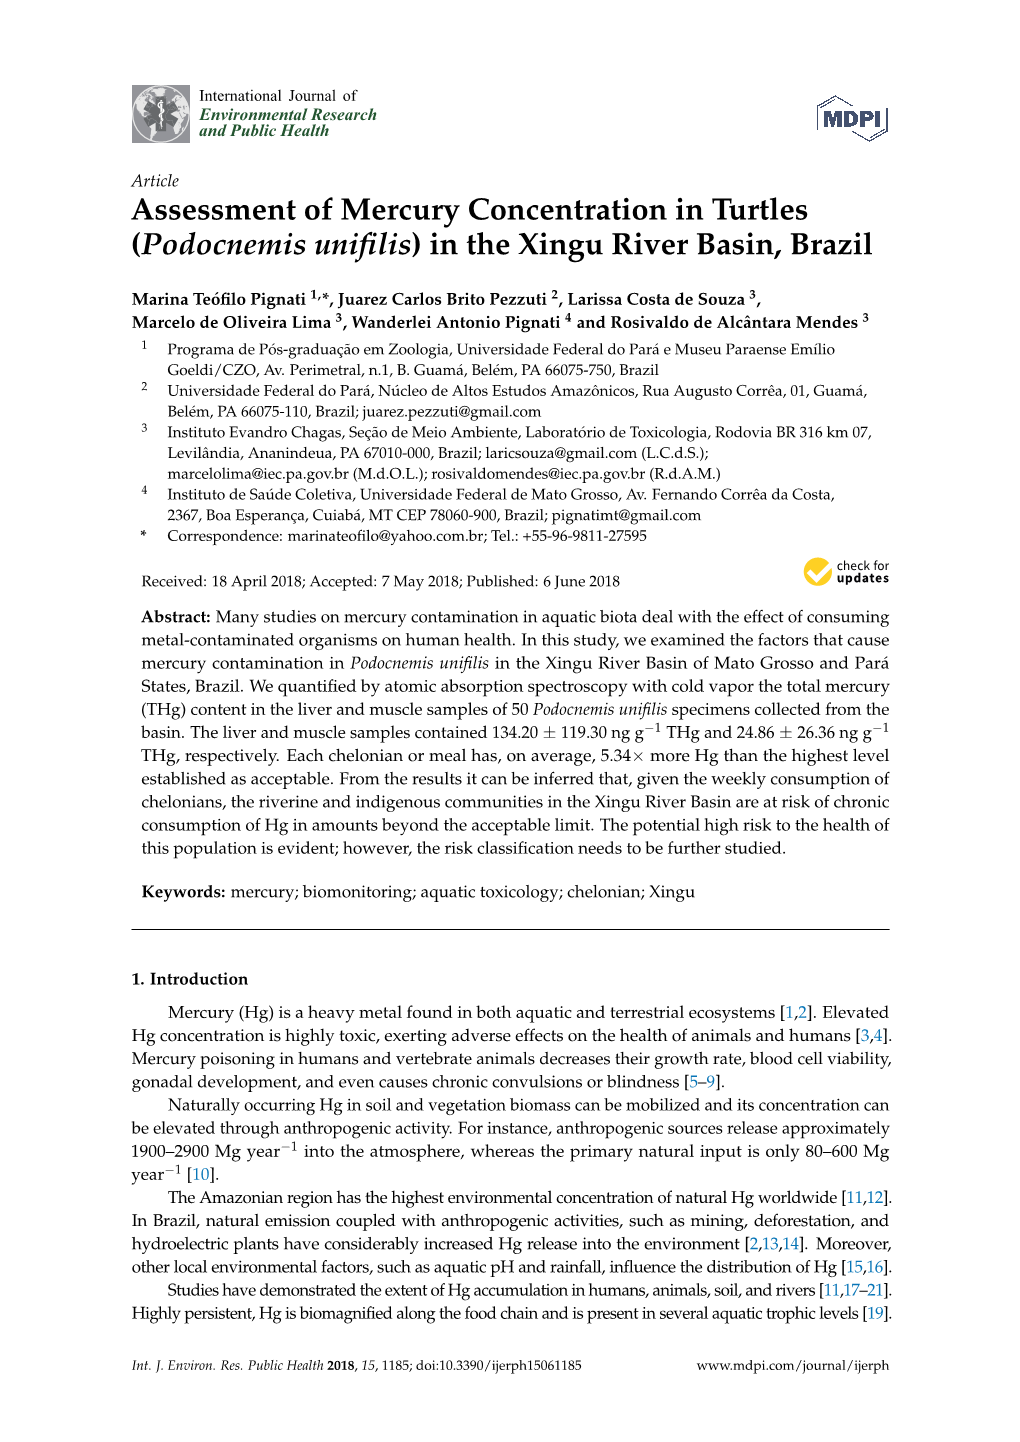 (Podocnemis Unifilis) in the Xingu River Basin, Brazil